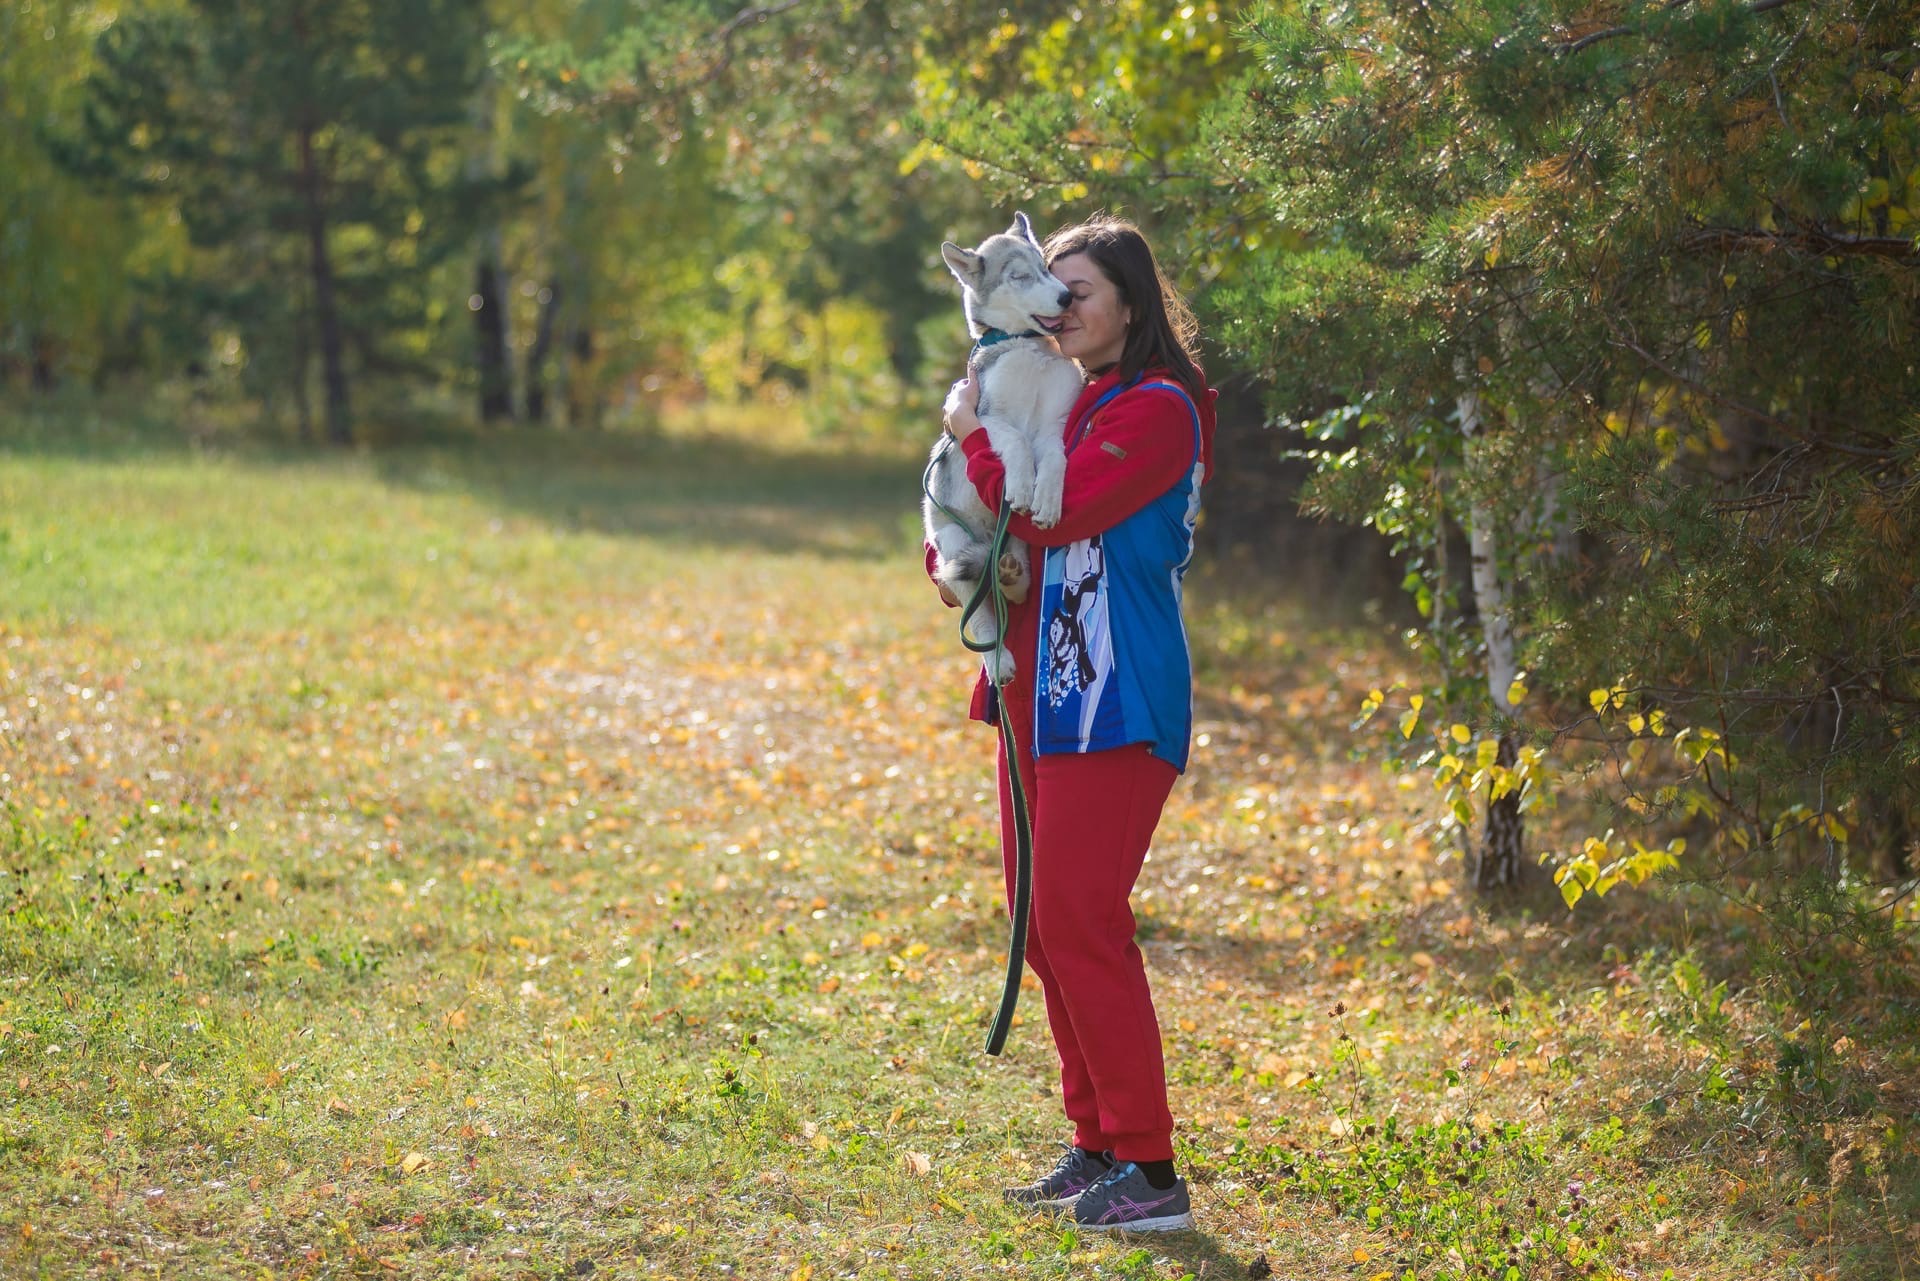 Анастасия участвует в профессиональных гонках со своими собаками. Когда Фокс освоит бег и научится тянуть, то, возможно, примет участие в соревнованиях